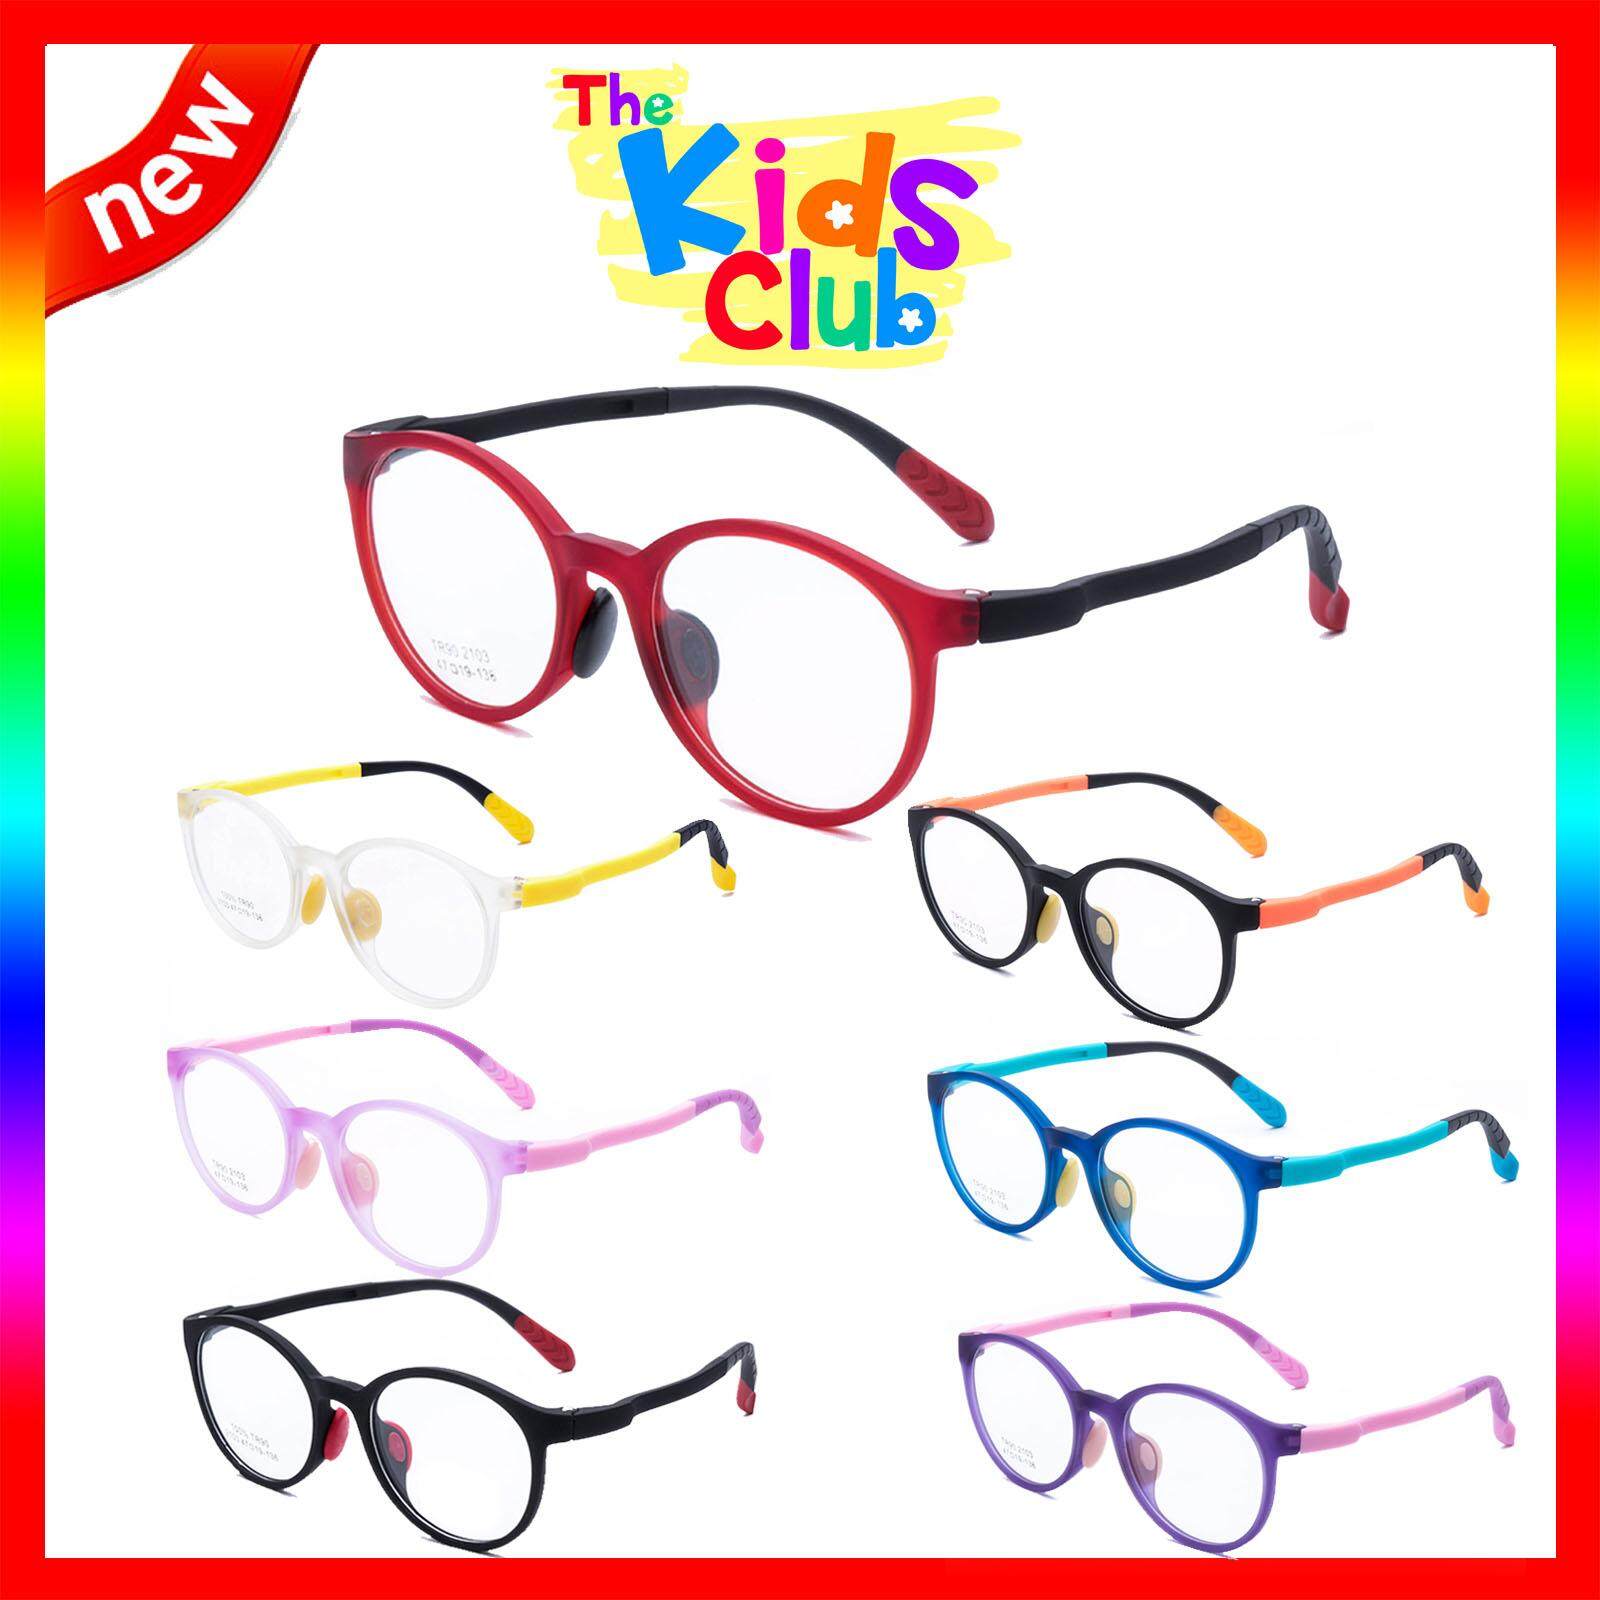 แว่นตาเกาหลีเด็ก Fashion Korea Children แว่นตาเด็ก รุ่น 2103 กรอบแว่นตาเด็ก Round ทรงกลม Eyeglass baby frame ( สำหรับตัดเลนส์ ) วัสดุ TR-90 เบาและยืดหยุนได้สูง ขาข้อต่อ Kid eyewear Glasses